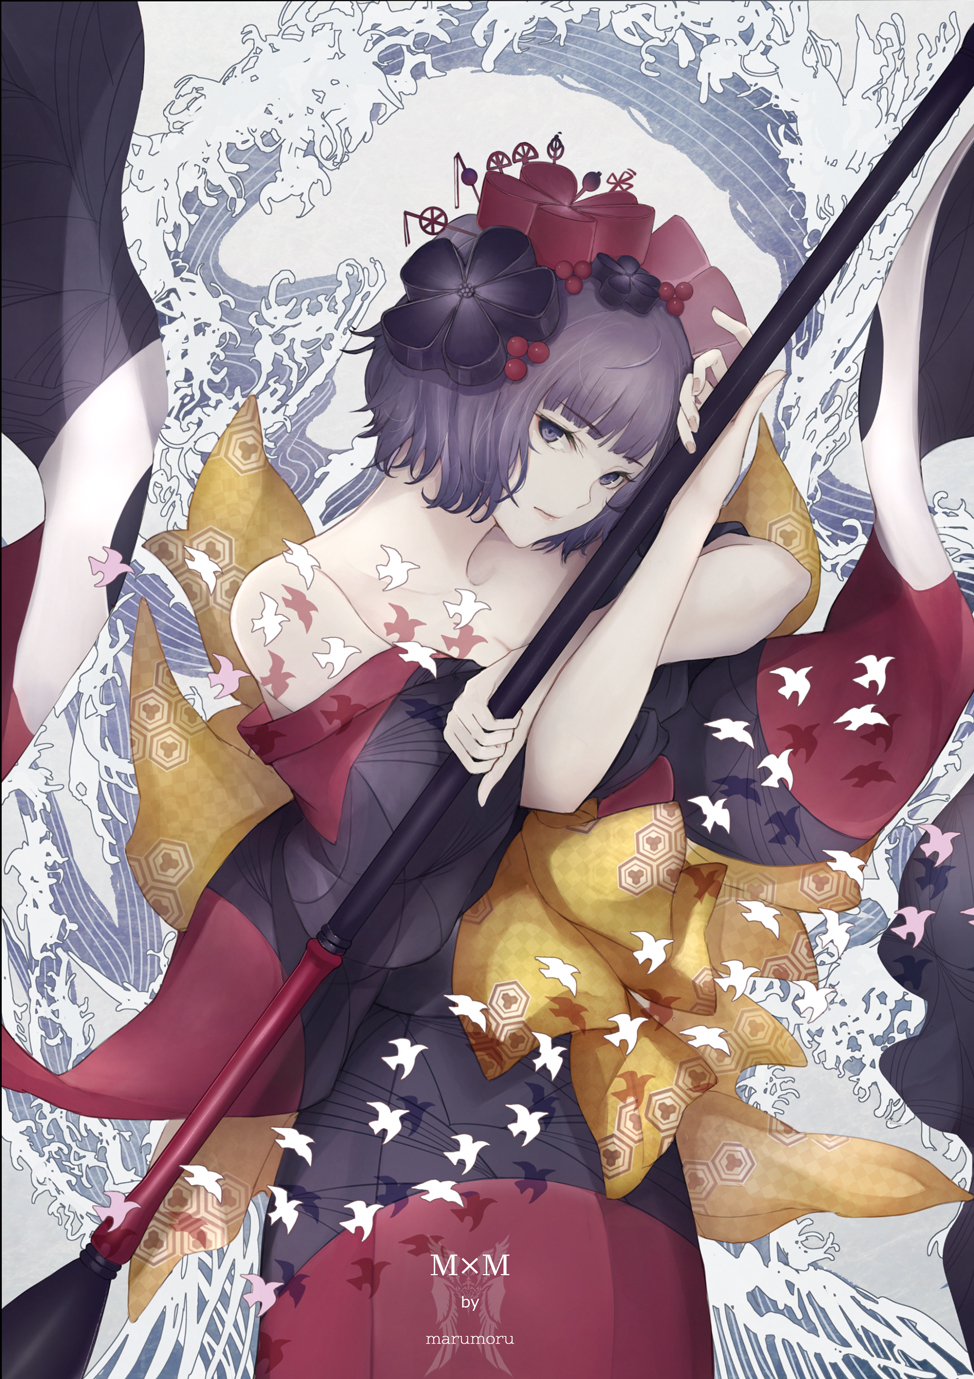 Anime Anime Girls Marumoru Fate Series Fate Grand Order Katsushika Hokusai Fate Grand Order Stare 974x1379